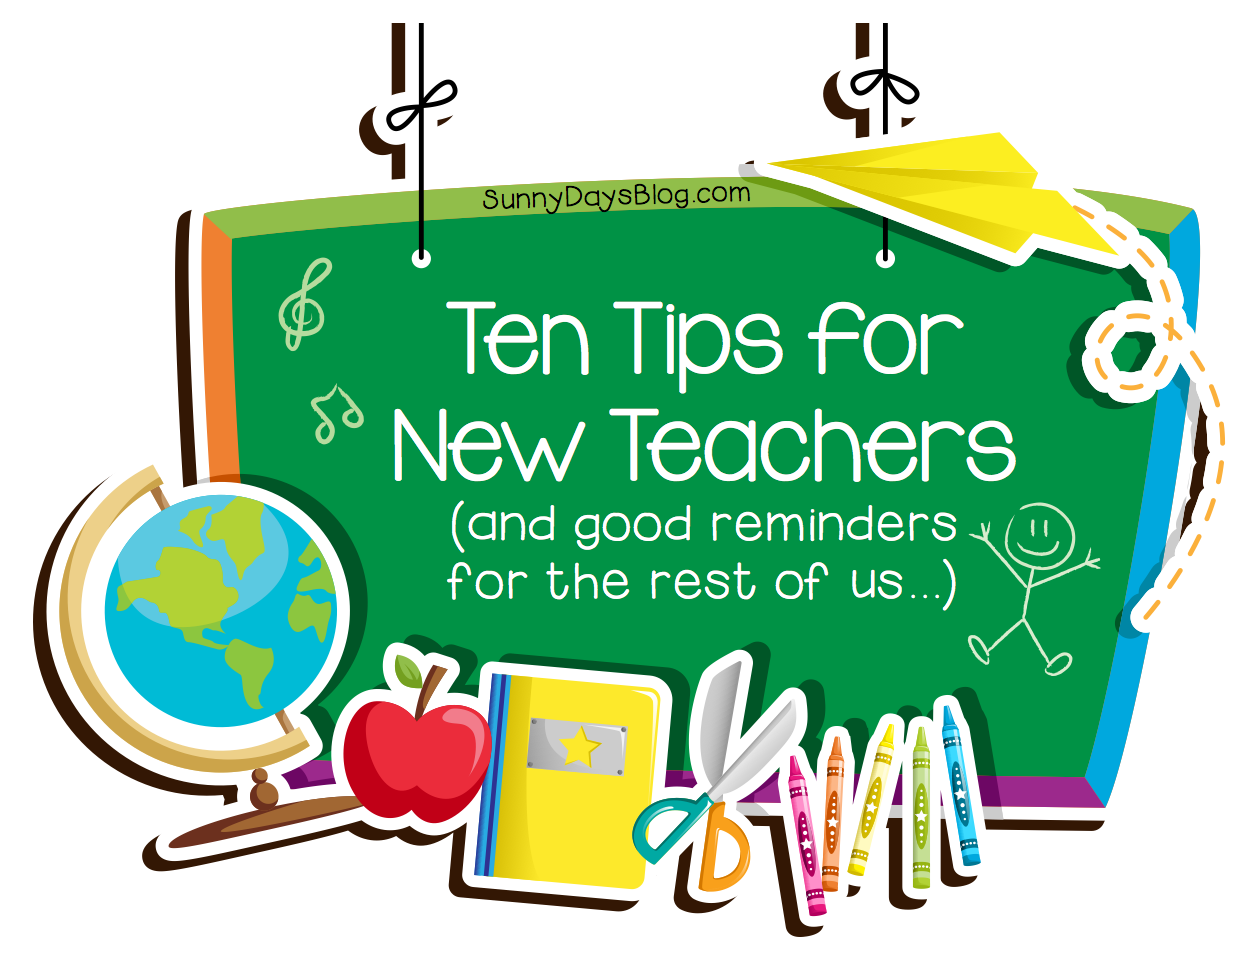 We have a new teacher. New teacher. Teaching Tips. Teacher's Pointer. Teach about Sunny Day.